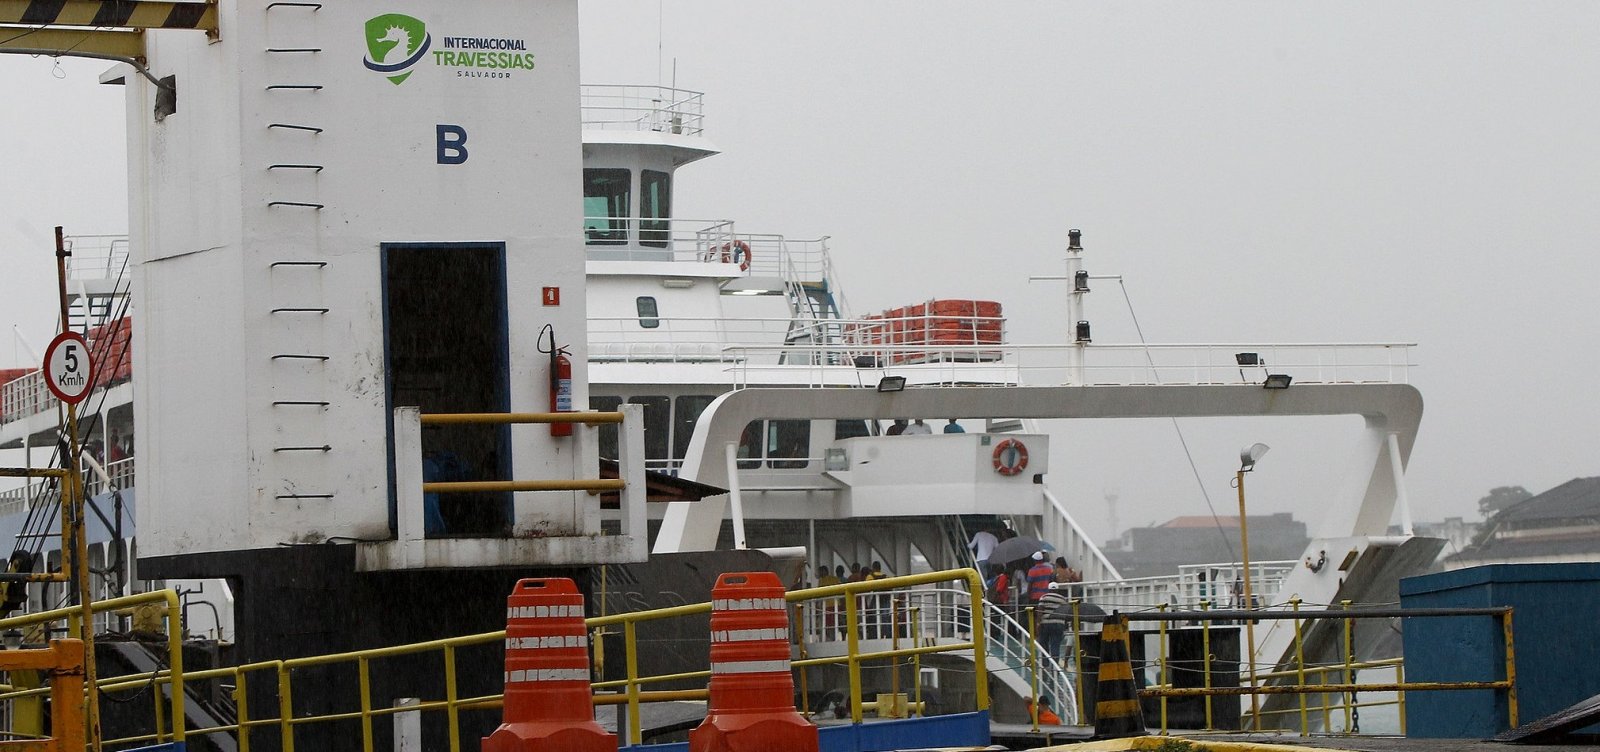 Ferry tem estoque suficiente de combustível para os próximos dias, diz Internacional